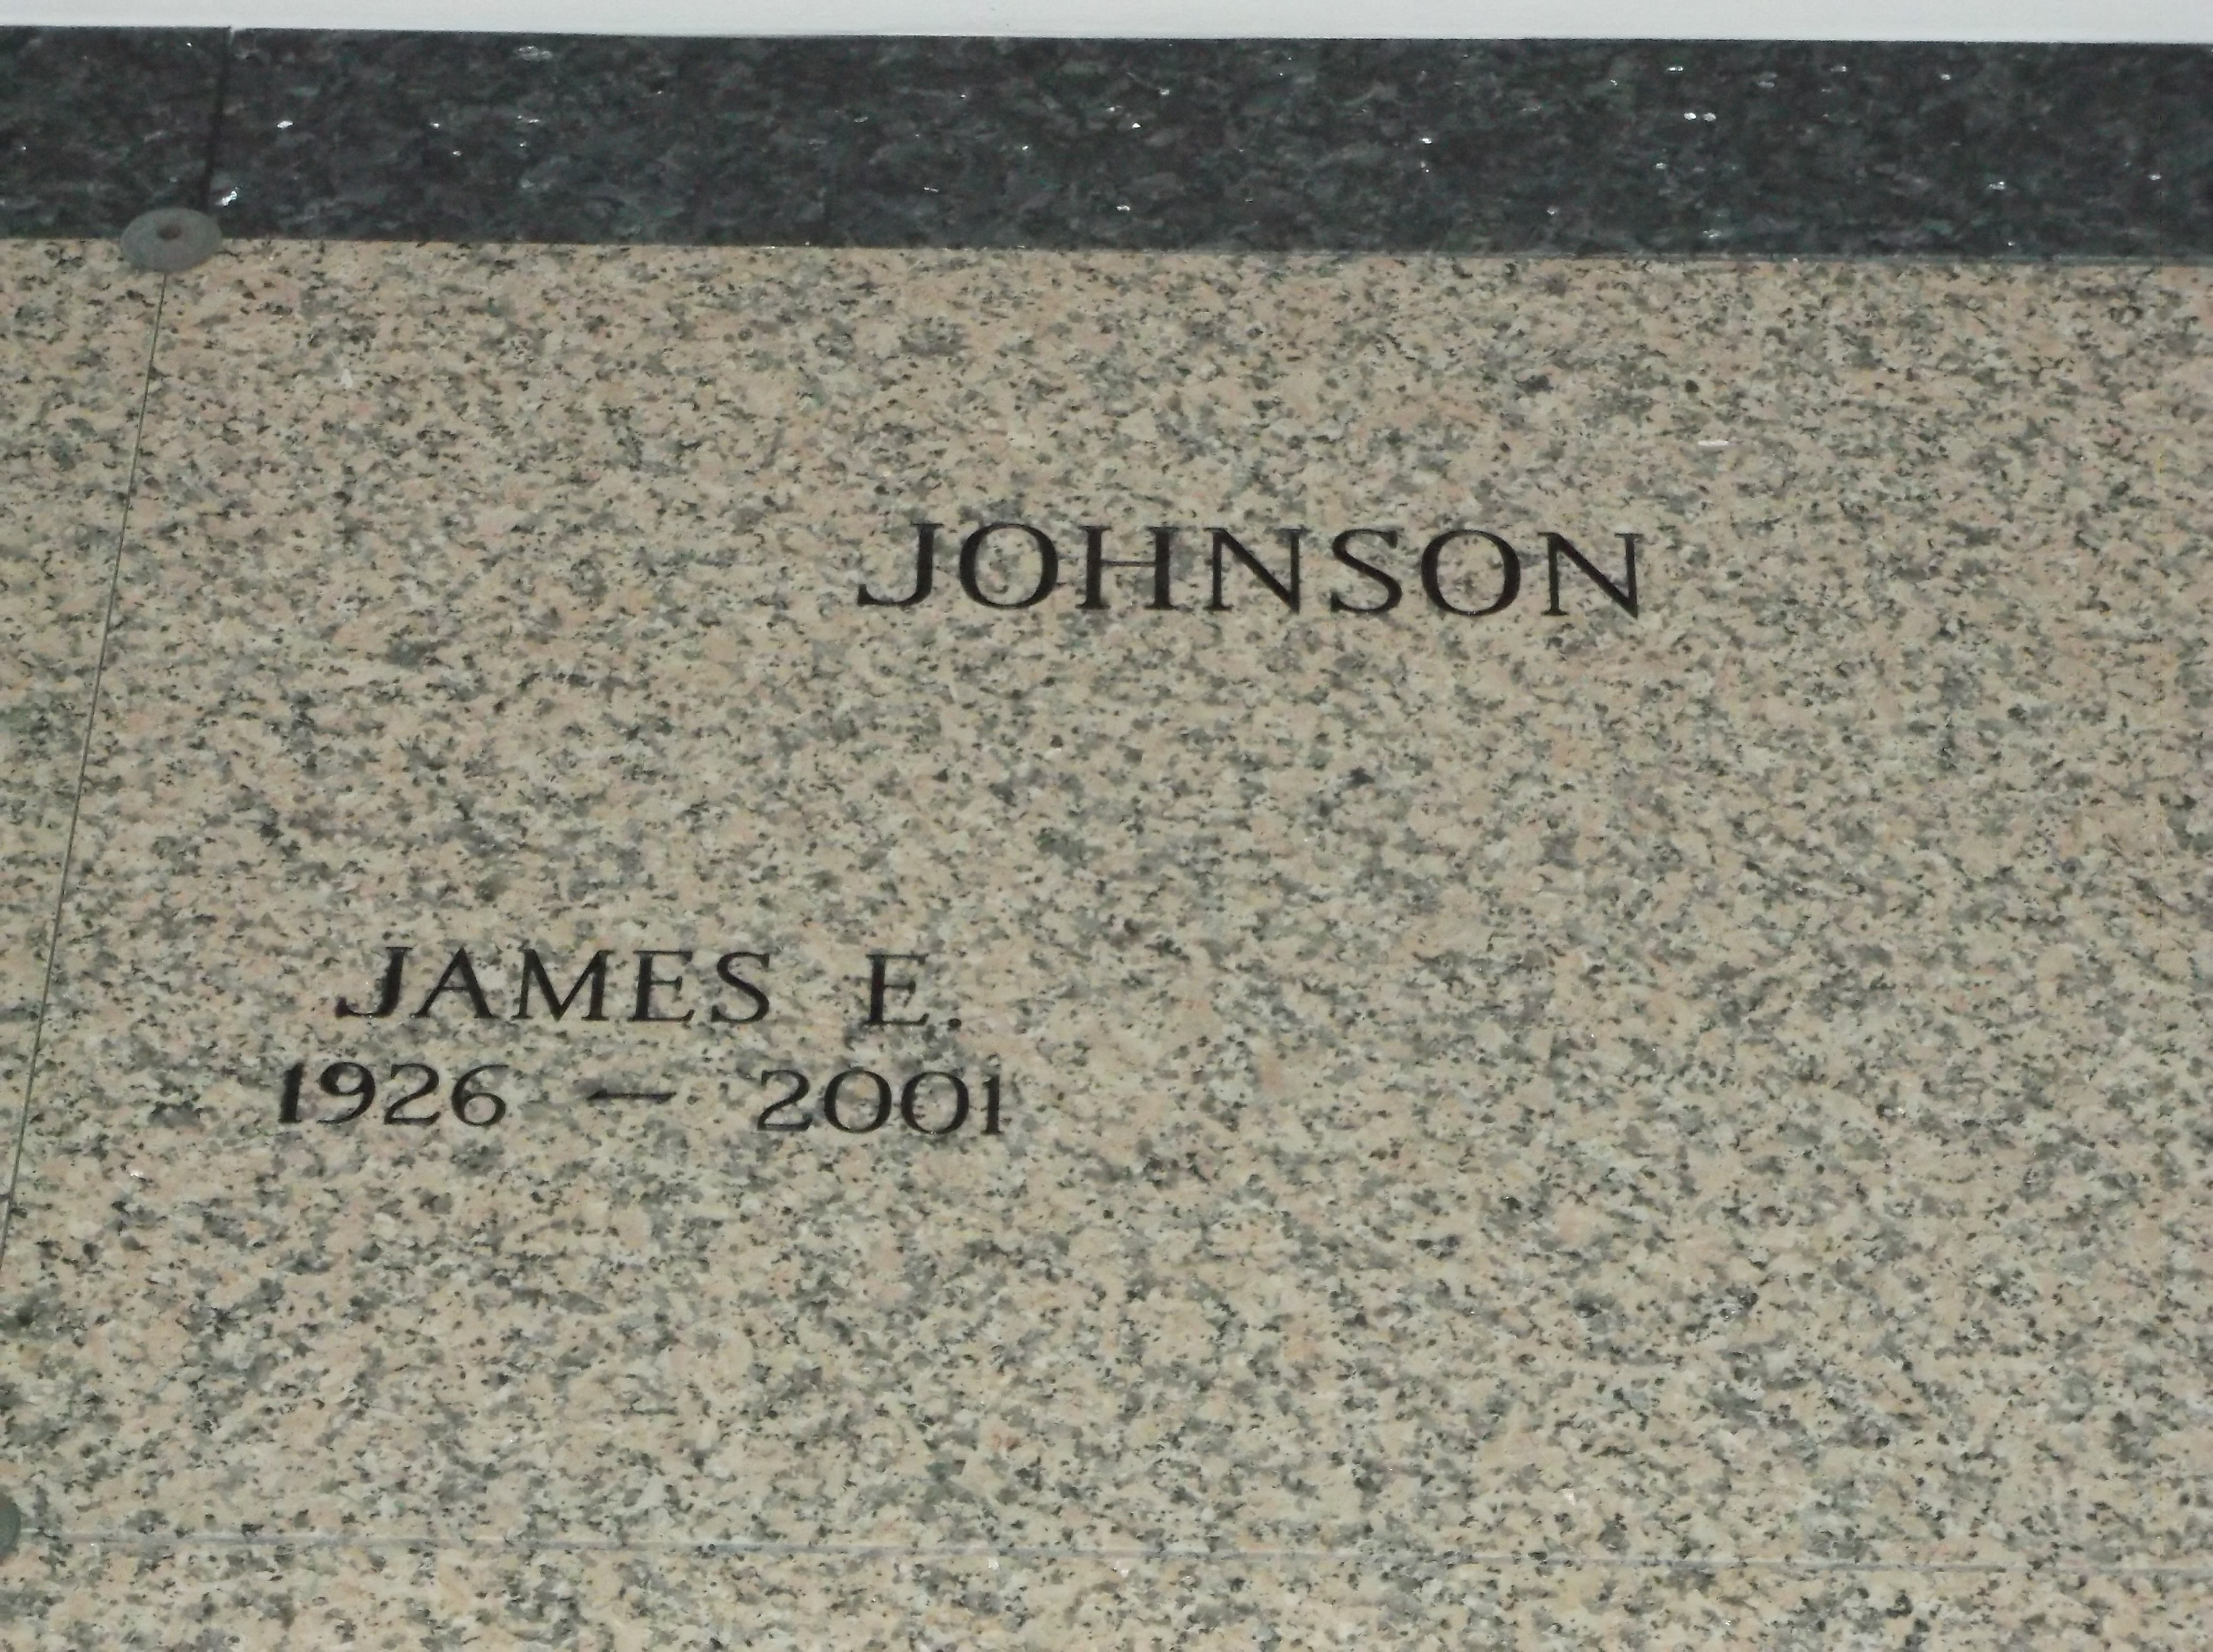 James E Johnson